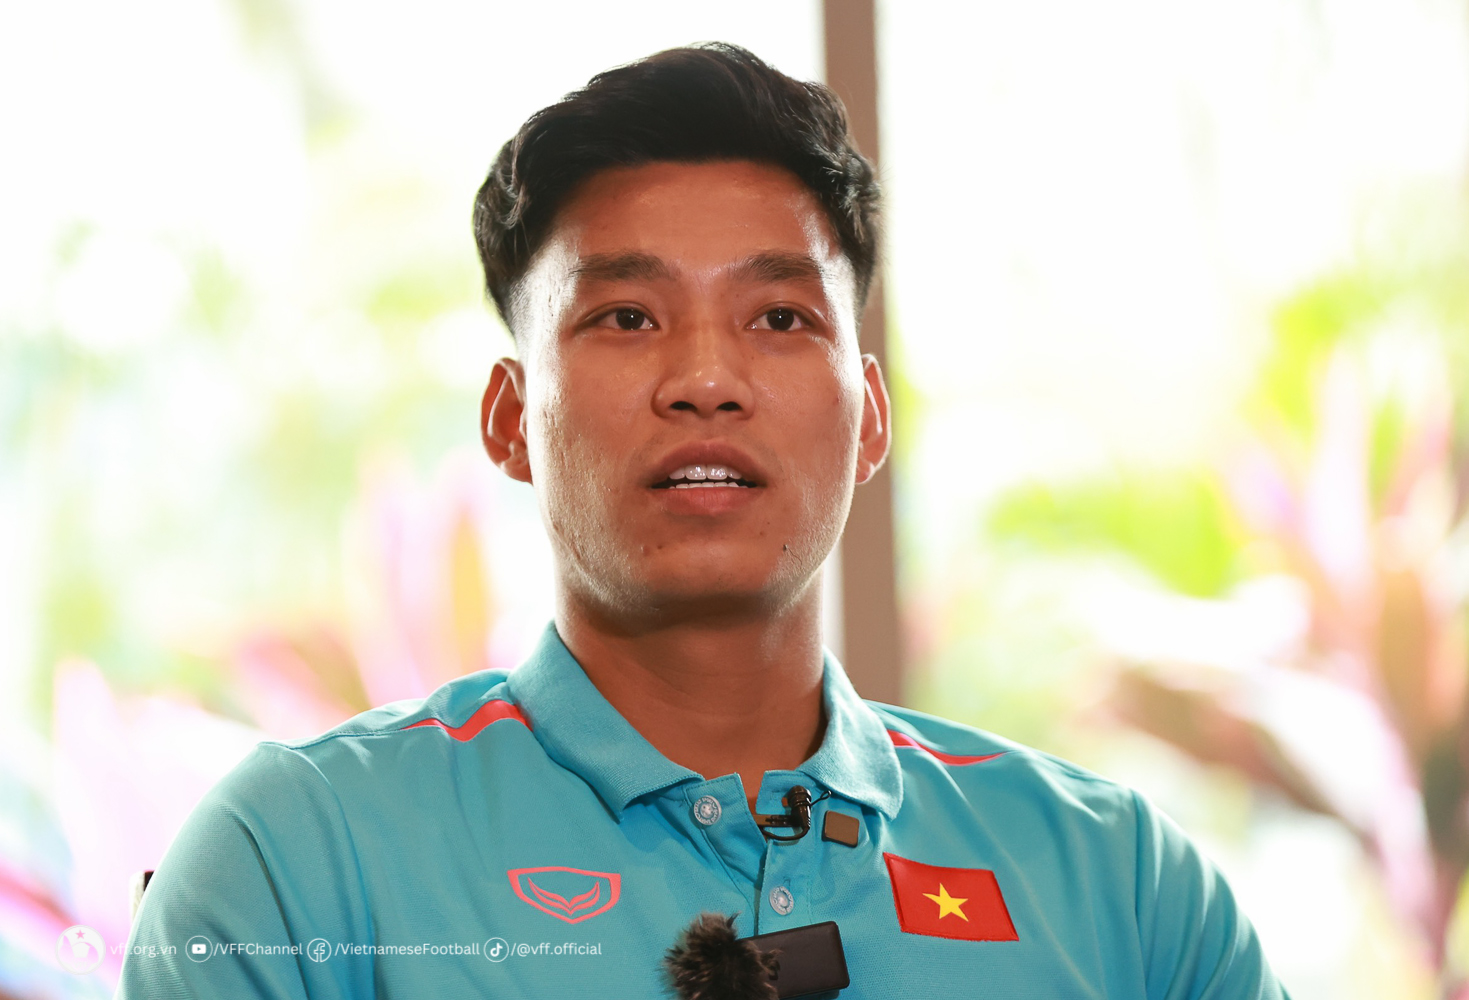 Tiền vệ Vũ Văn Thanh đặt quyết tâm trước trận đấu với ĐT Philippines - Ảnh 1.